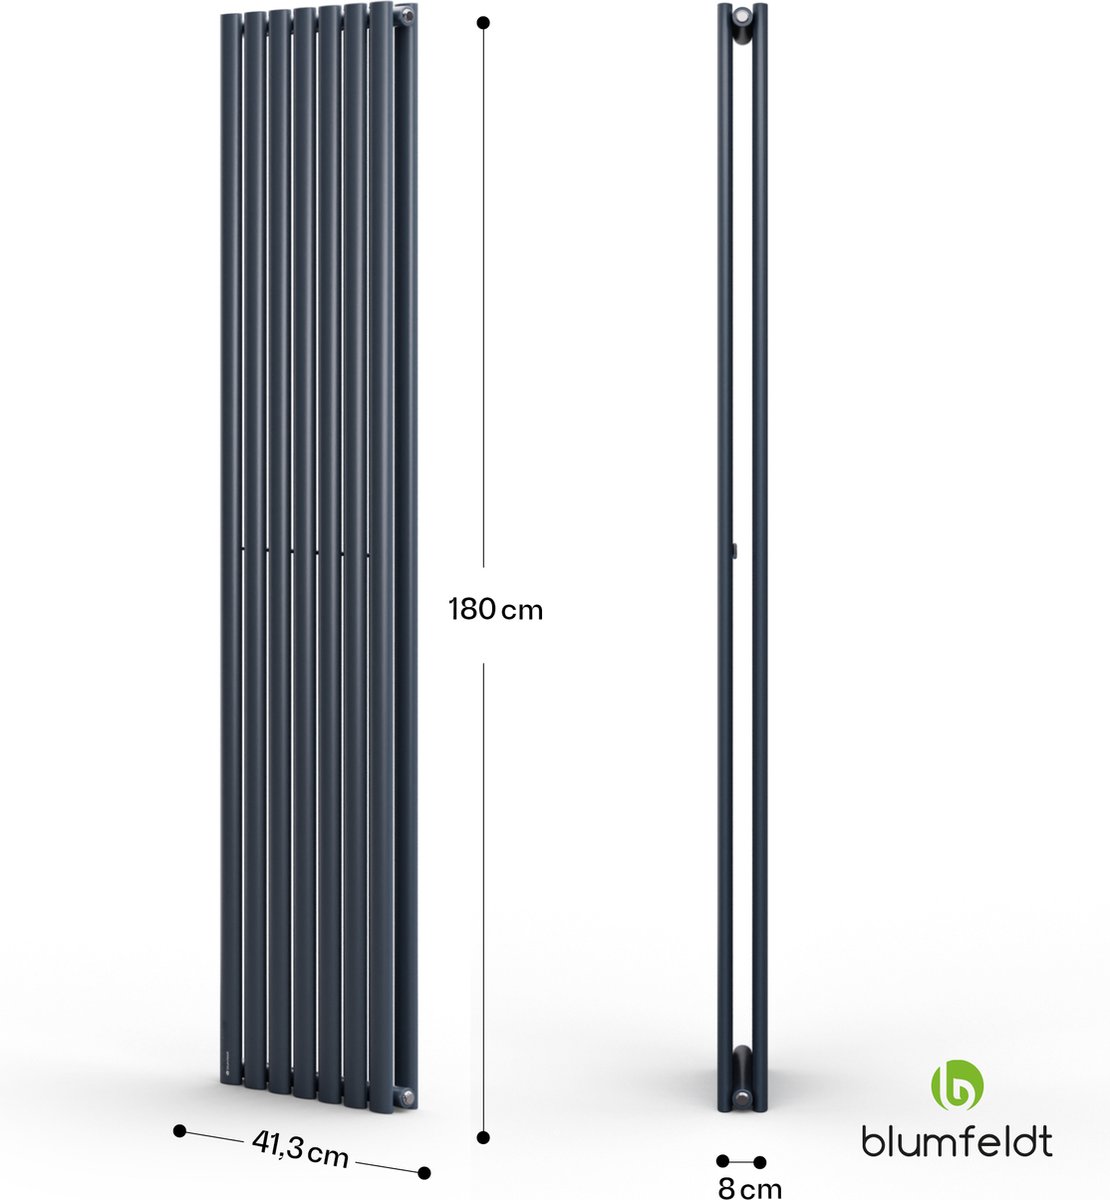 Blumfeldt Badkamerverwarming - 1435 Watt - Design Radiator Plat - Geruisloze vlakke designradiator - Verticaal - Thermostaat - Wandverwarming Voor Bad- en woonkamer - Antraciet